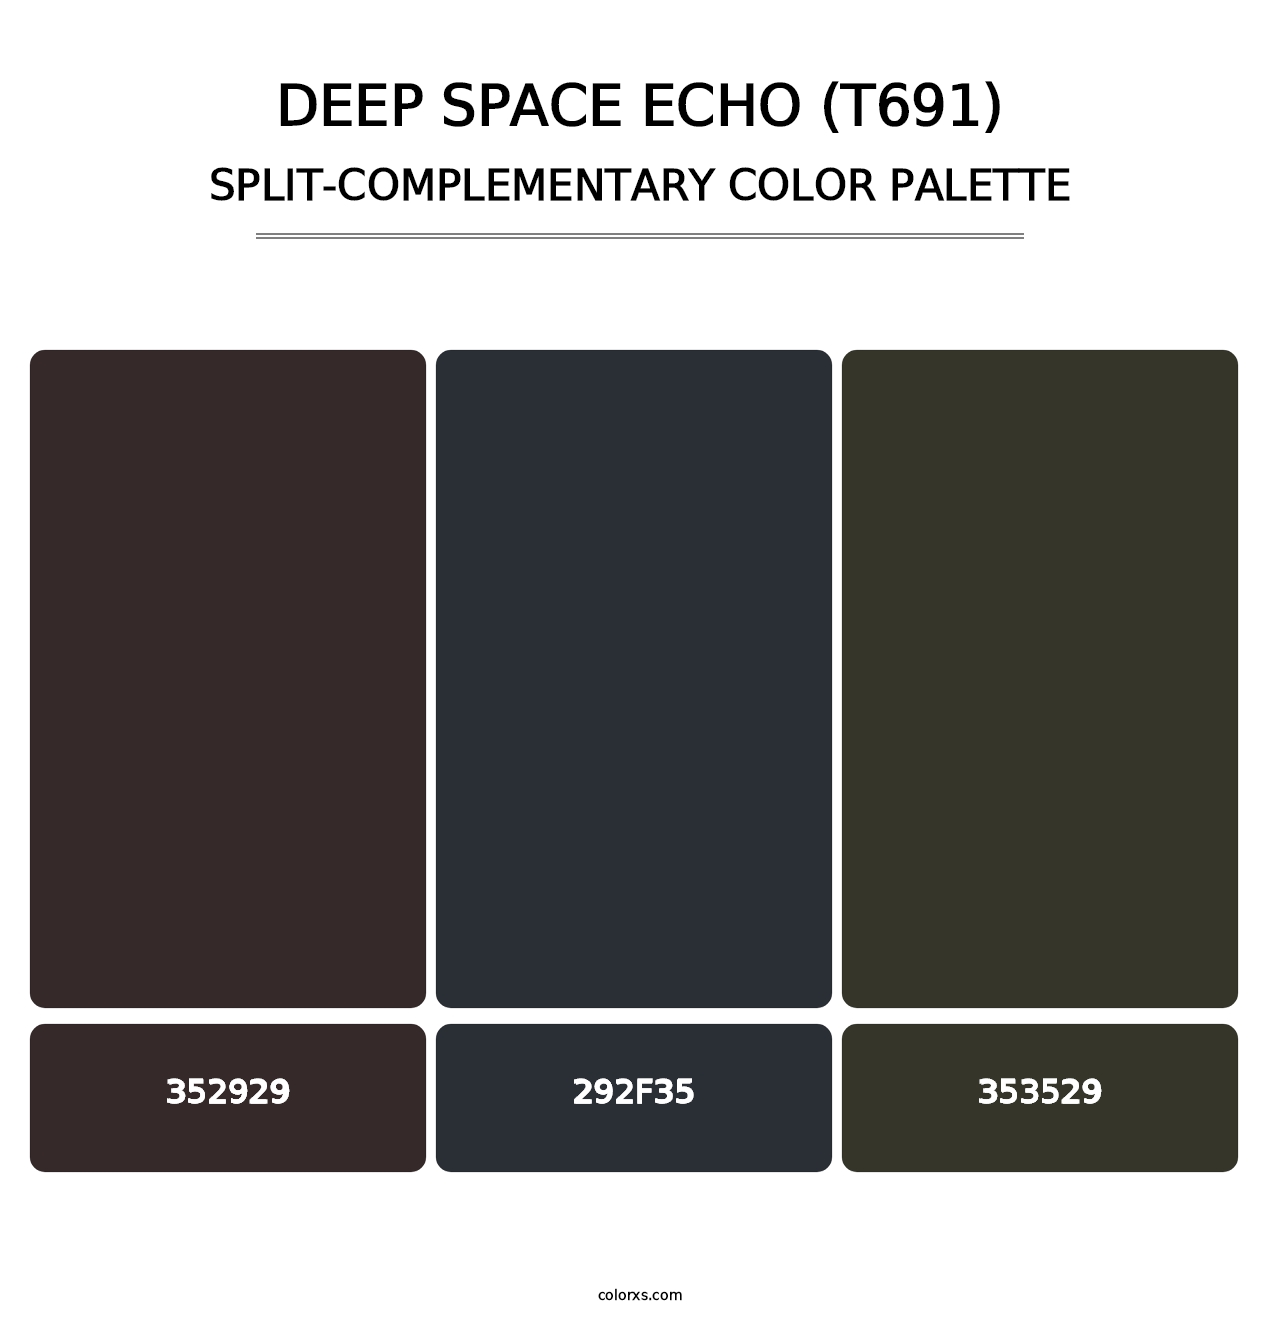 Deep Space Echo (T691) - Split-Complementary Color Palette